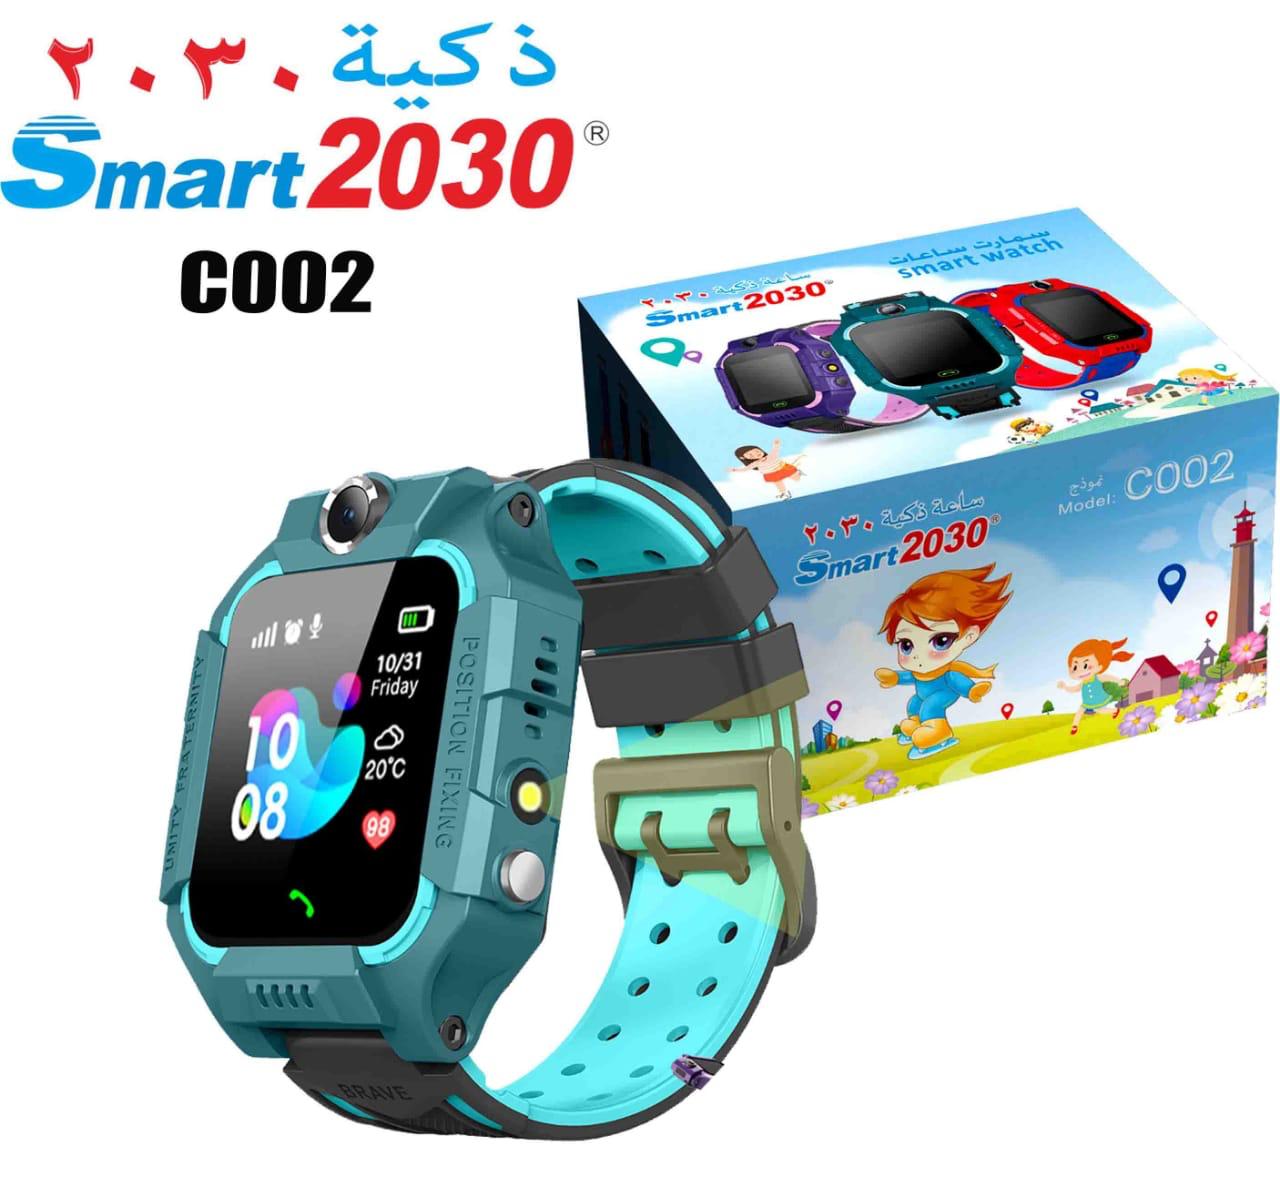 Smart watch Enfants Smart 2030 Gps C002